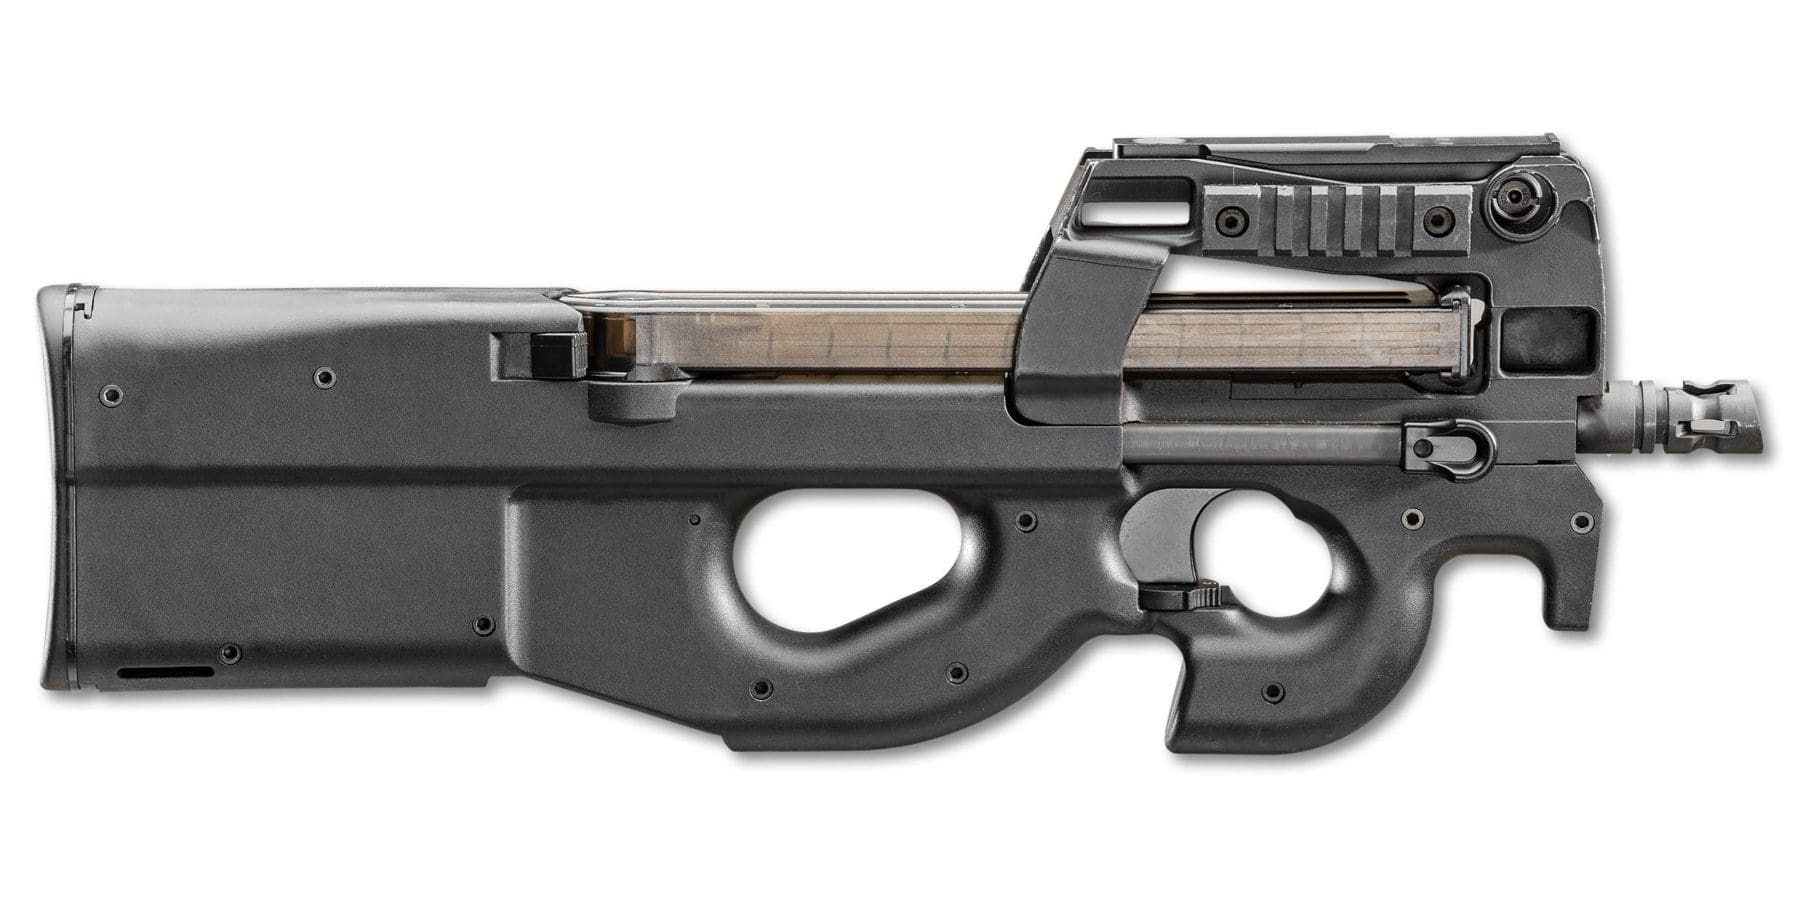 FN P90 PDW SBR